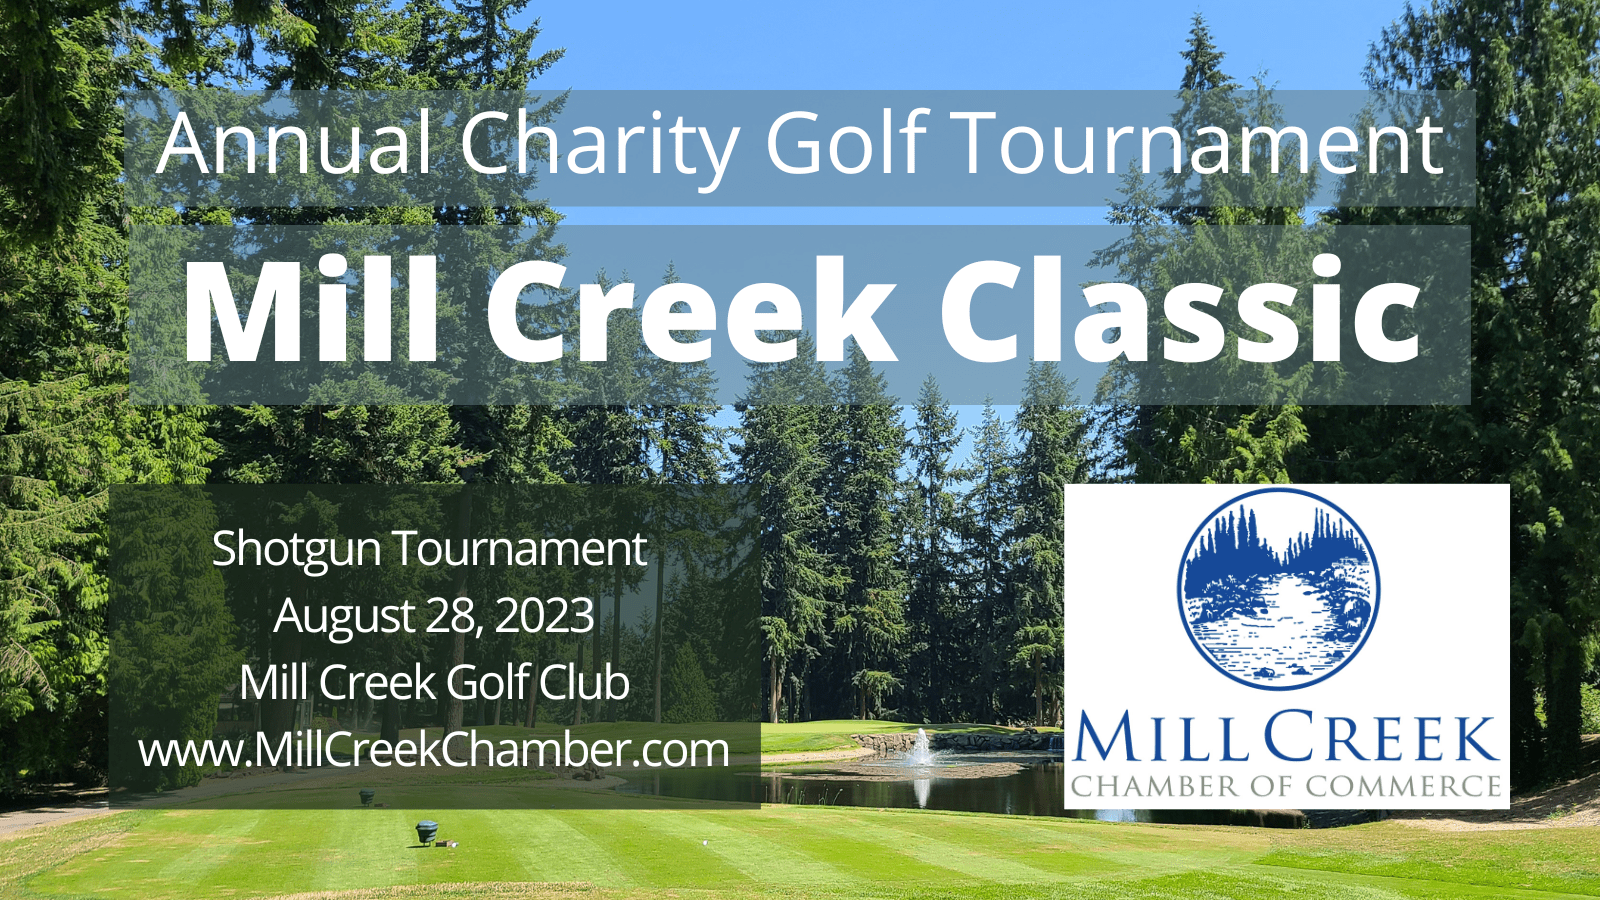 Mill Creek Classic Golf Tournament